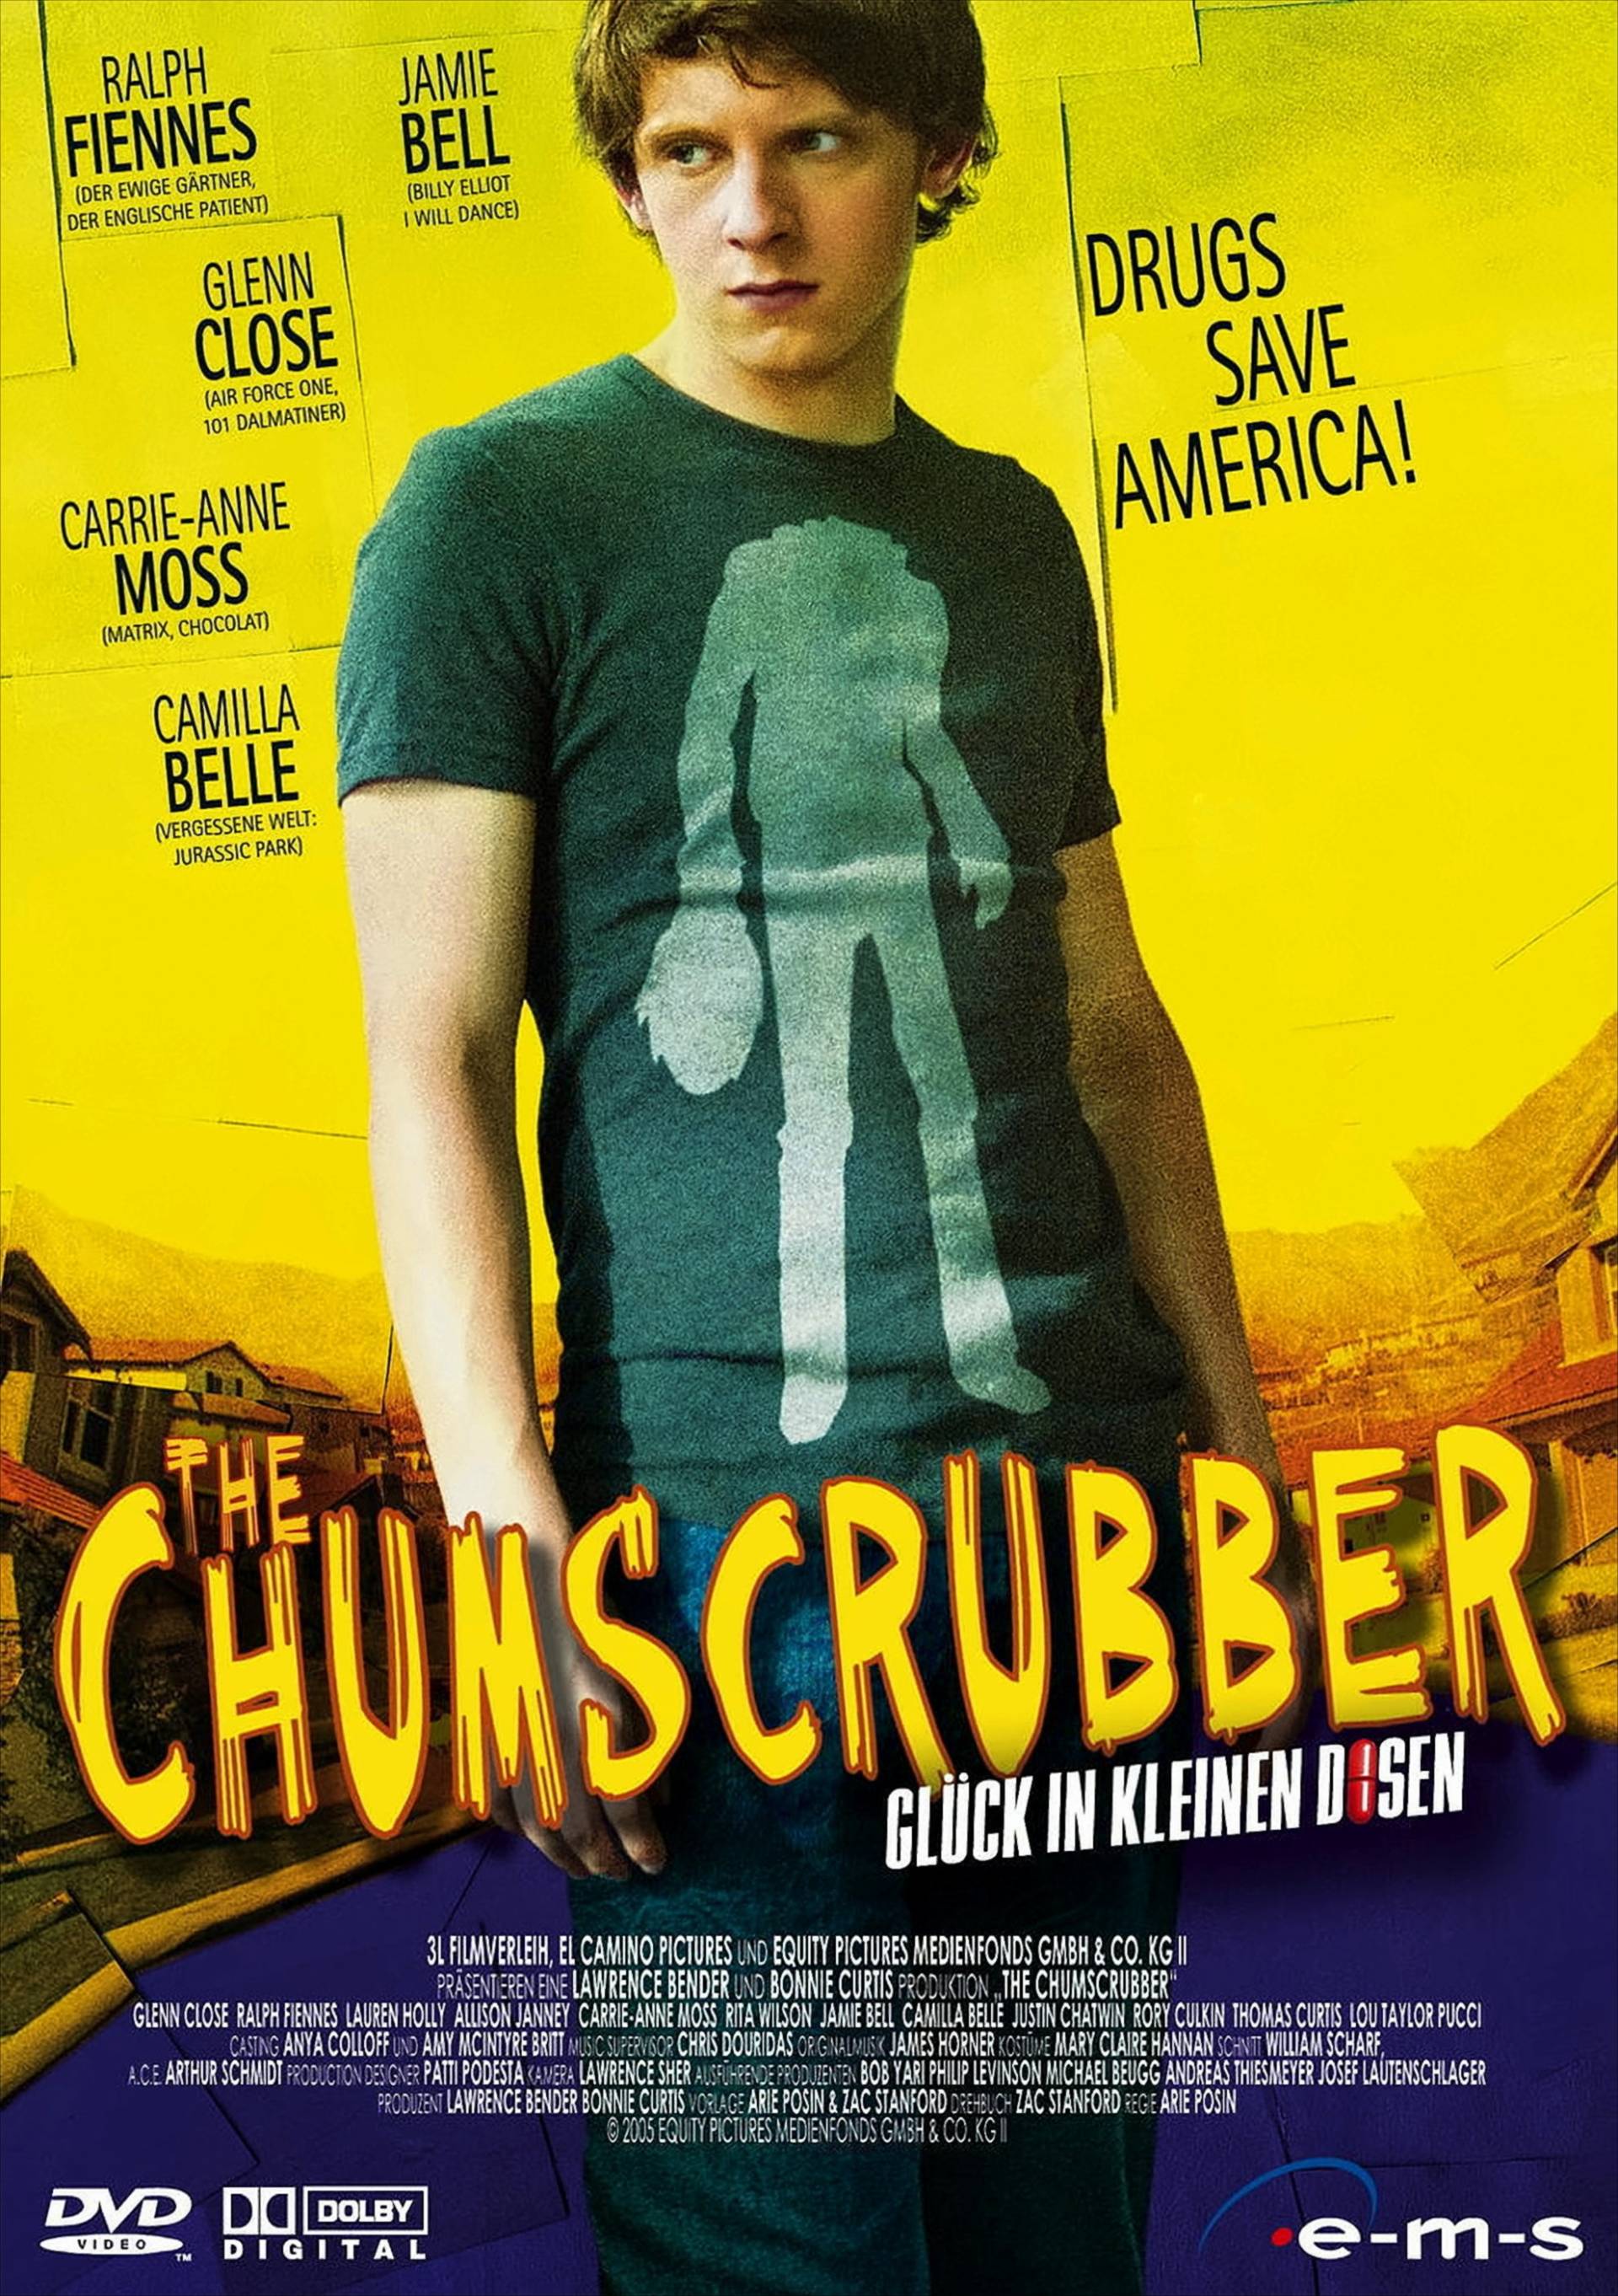 The Chumscrubber - Glück in kleinen Dosen von e-m-s GmbH